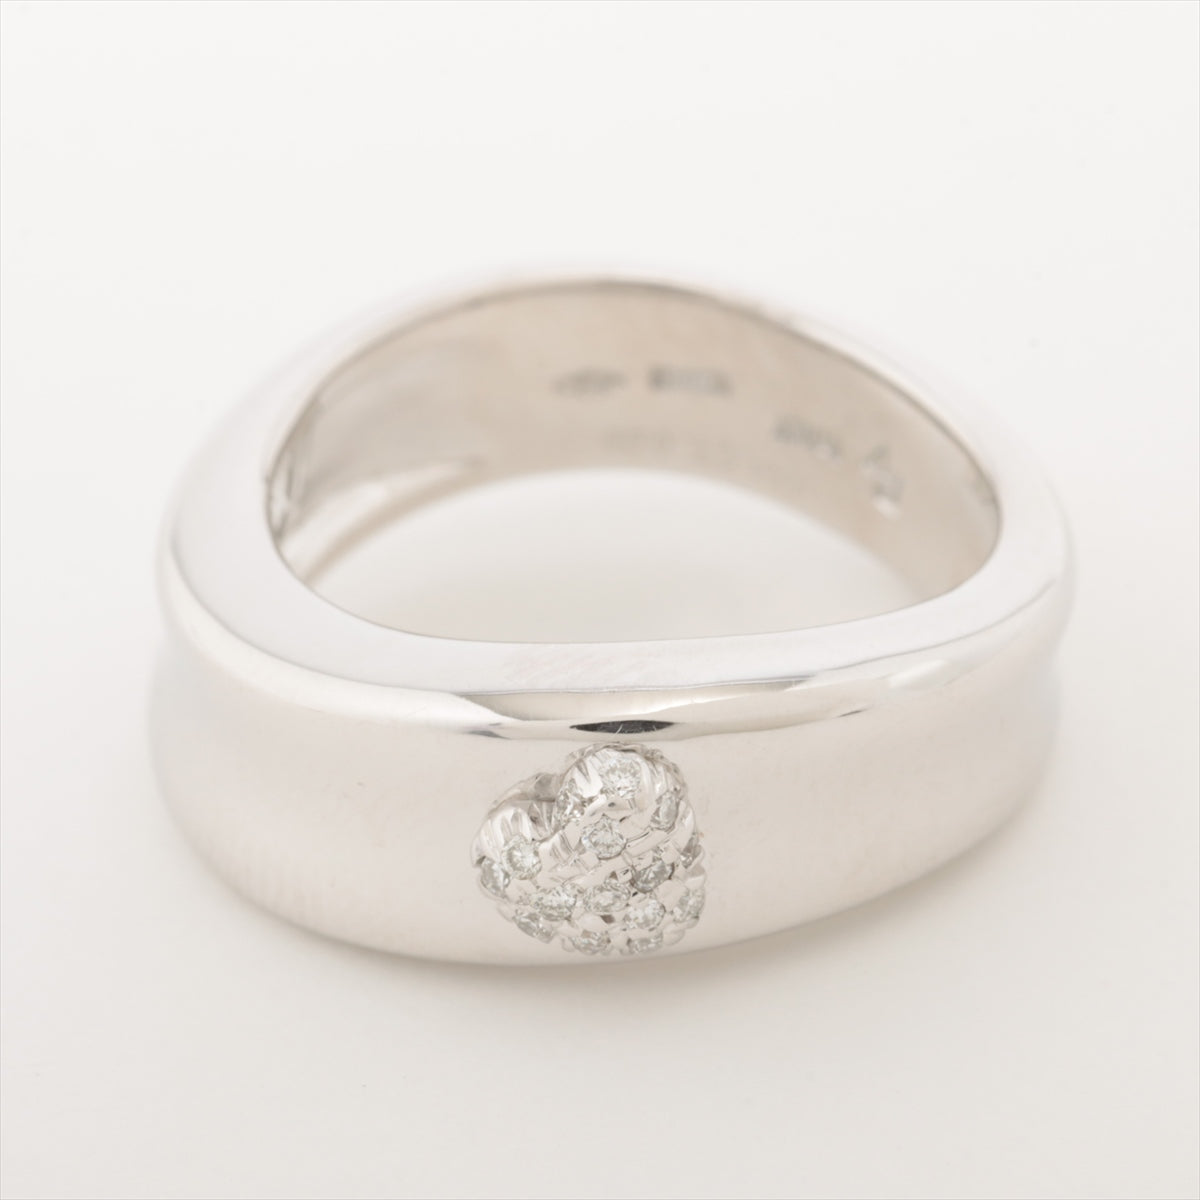 Ponte Vecchio diamond rings 750(WG) 7.6g 0.06